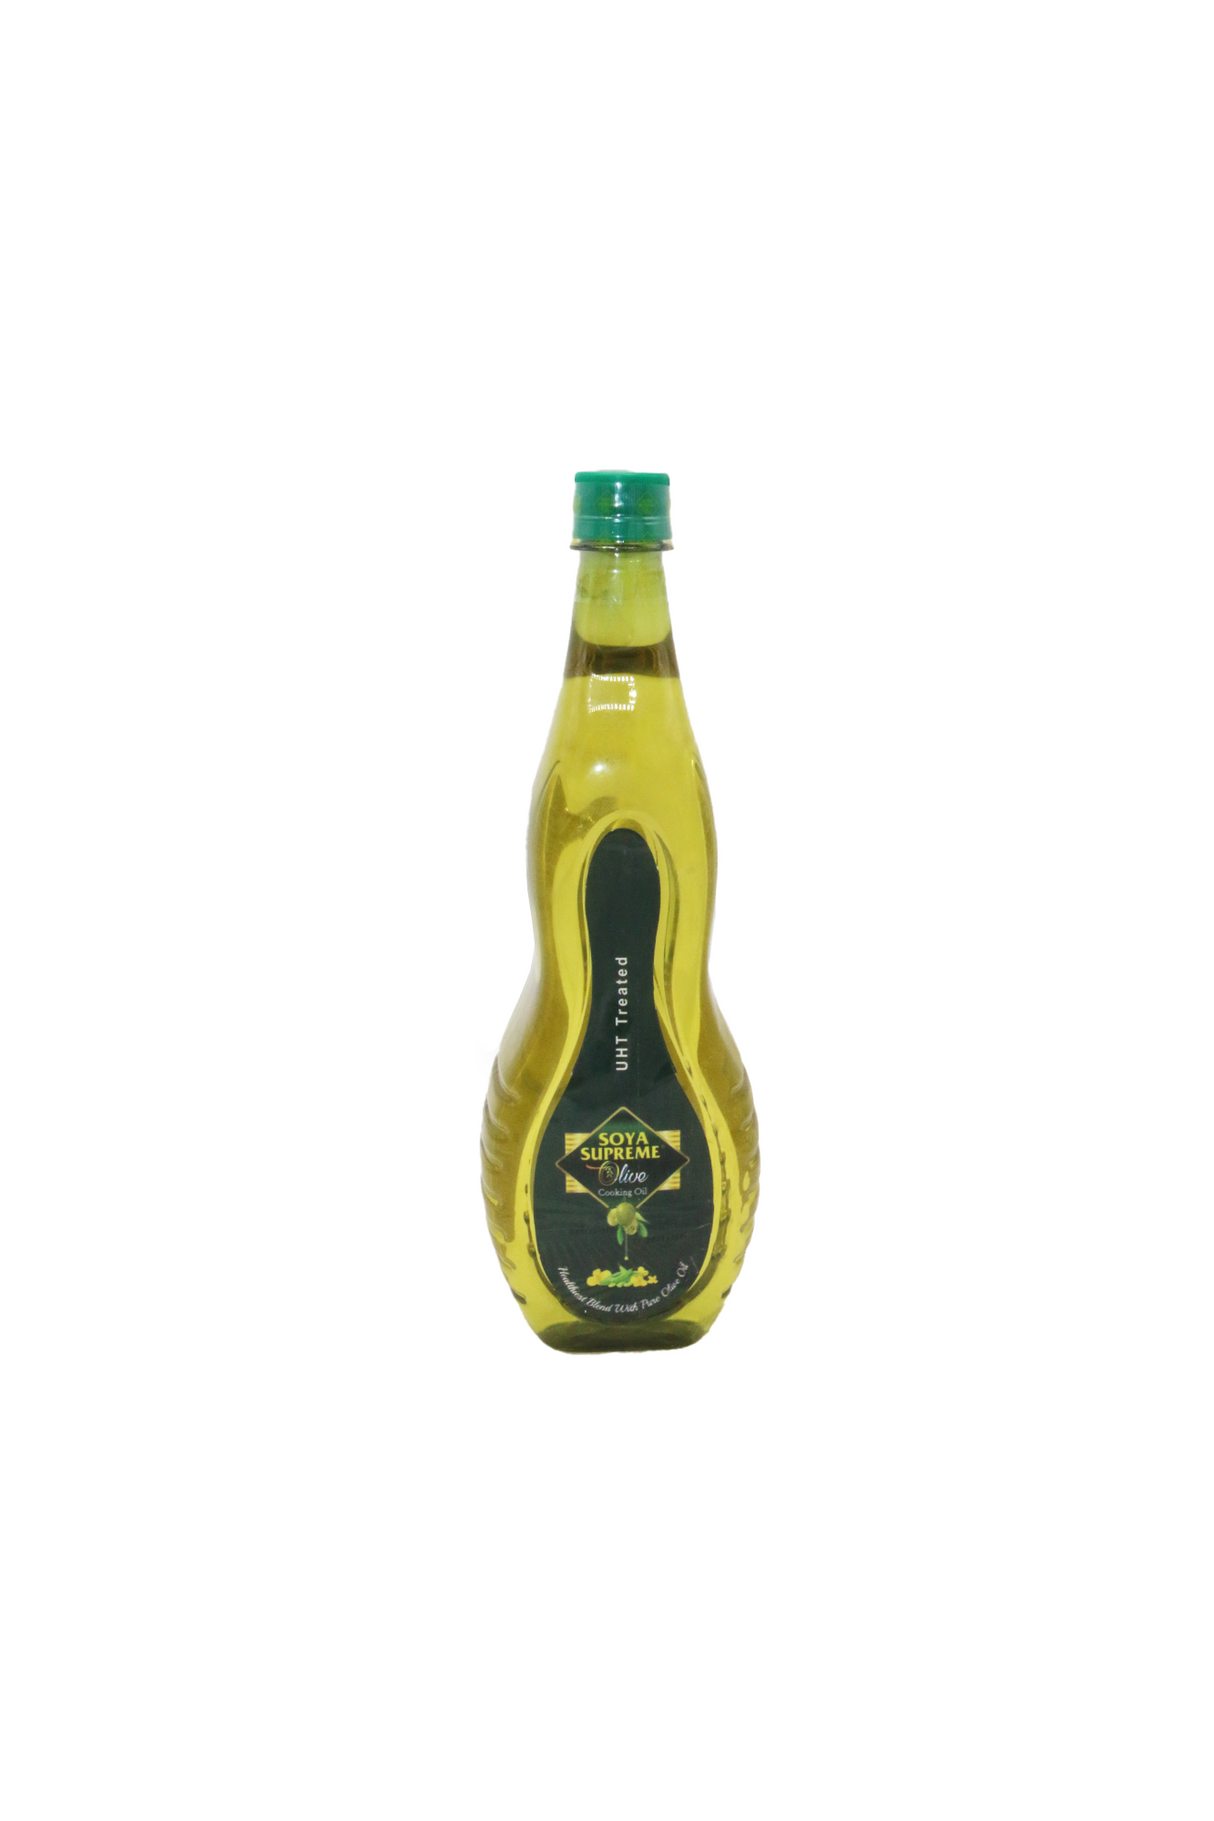 soya supreme olive oil 1l bottle